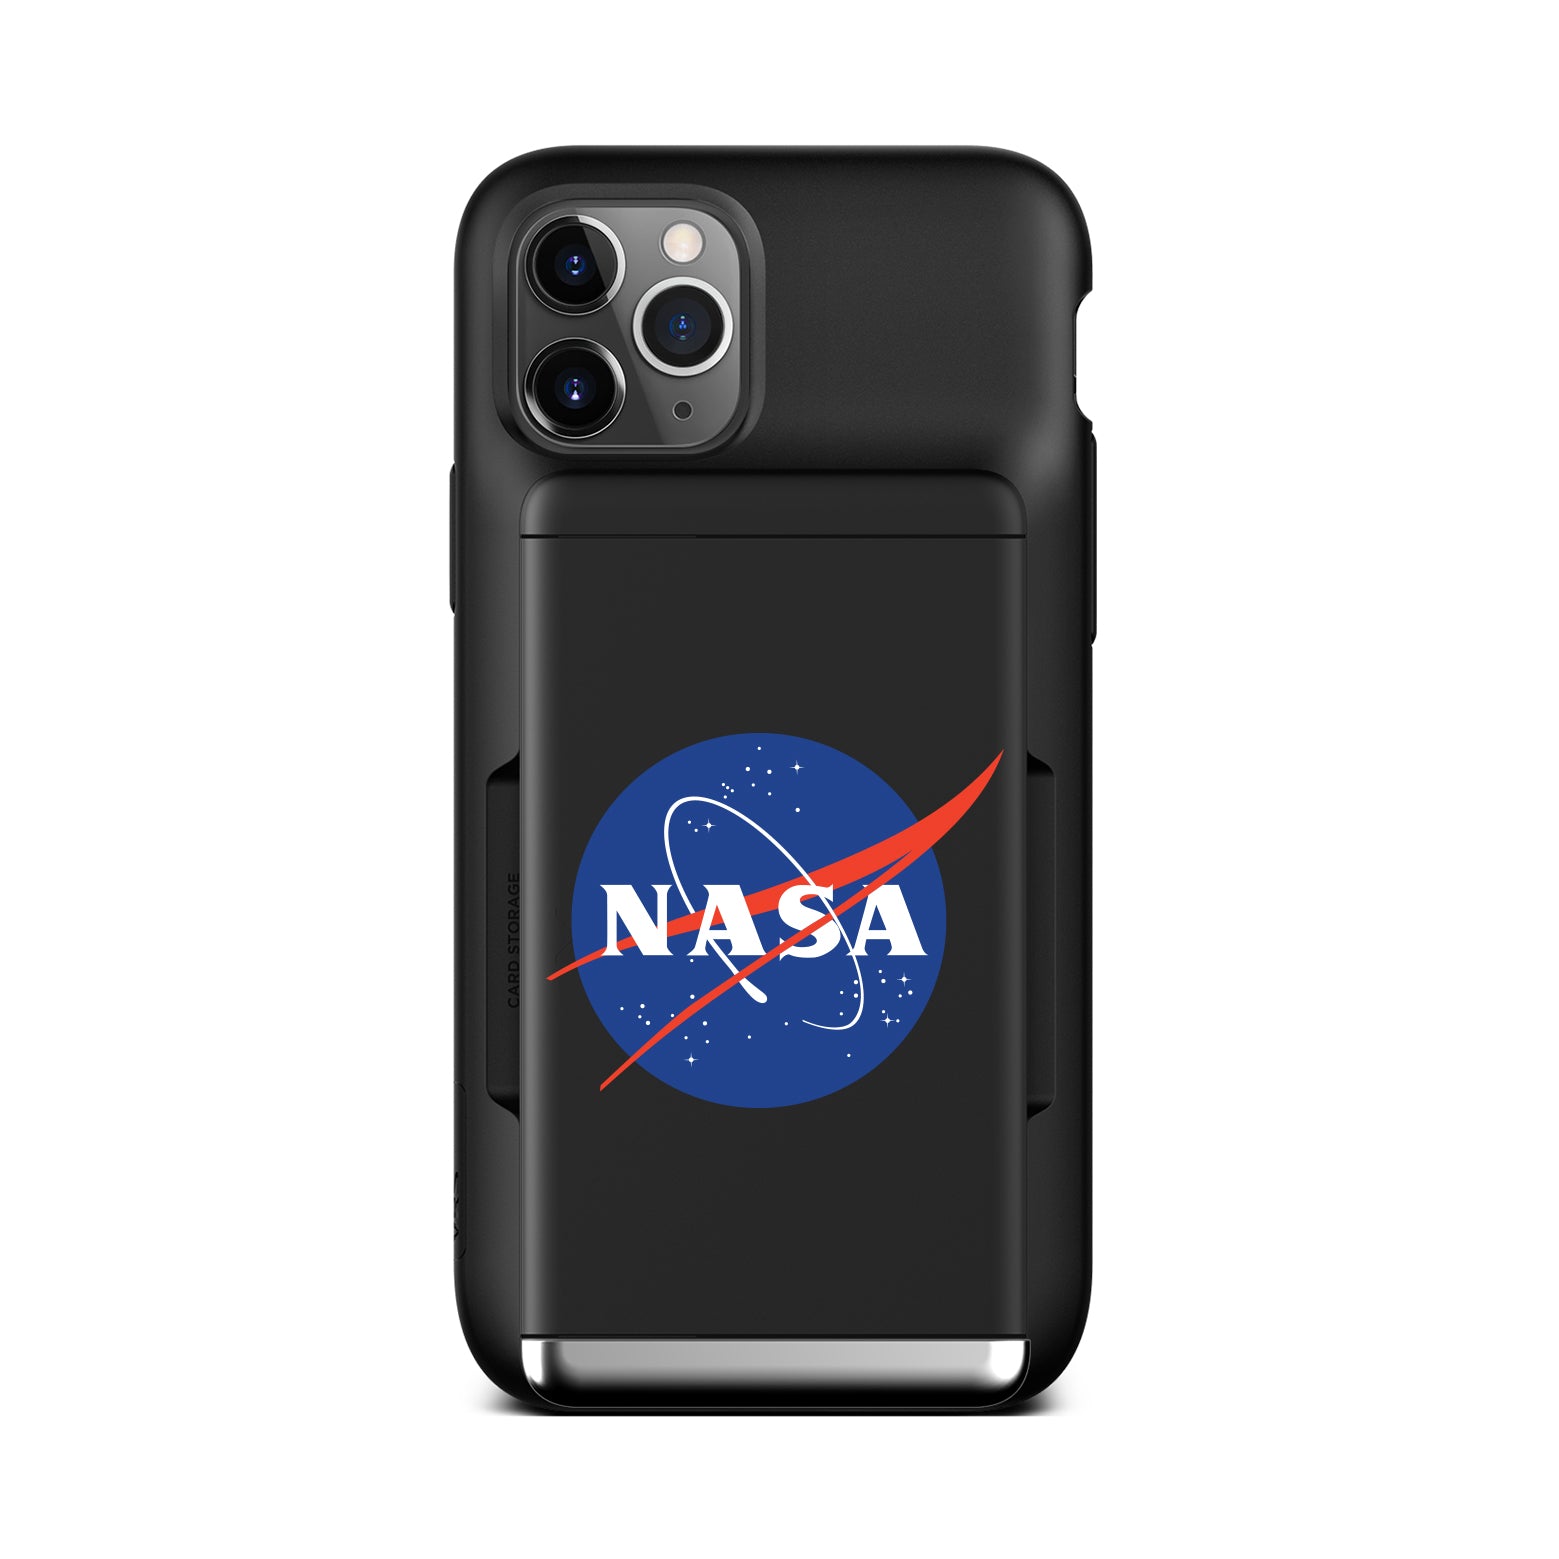 iPhone 11 Pro Case Damda Glide Shield NASA